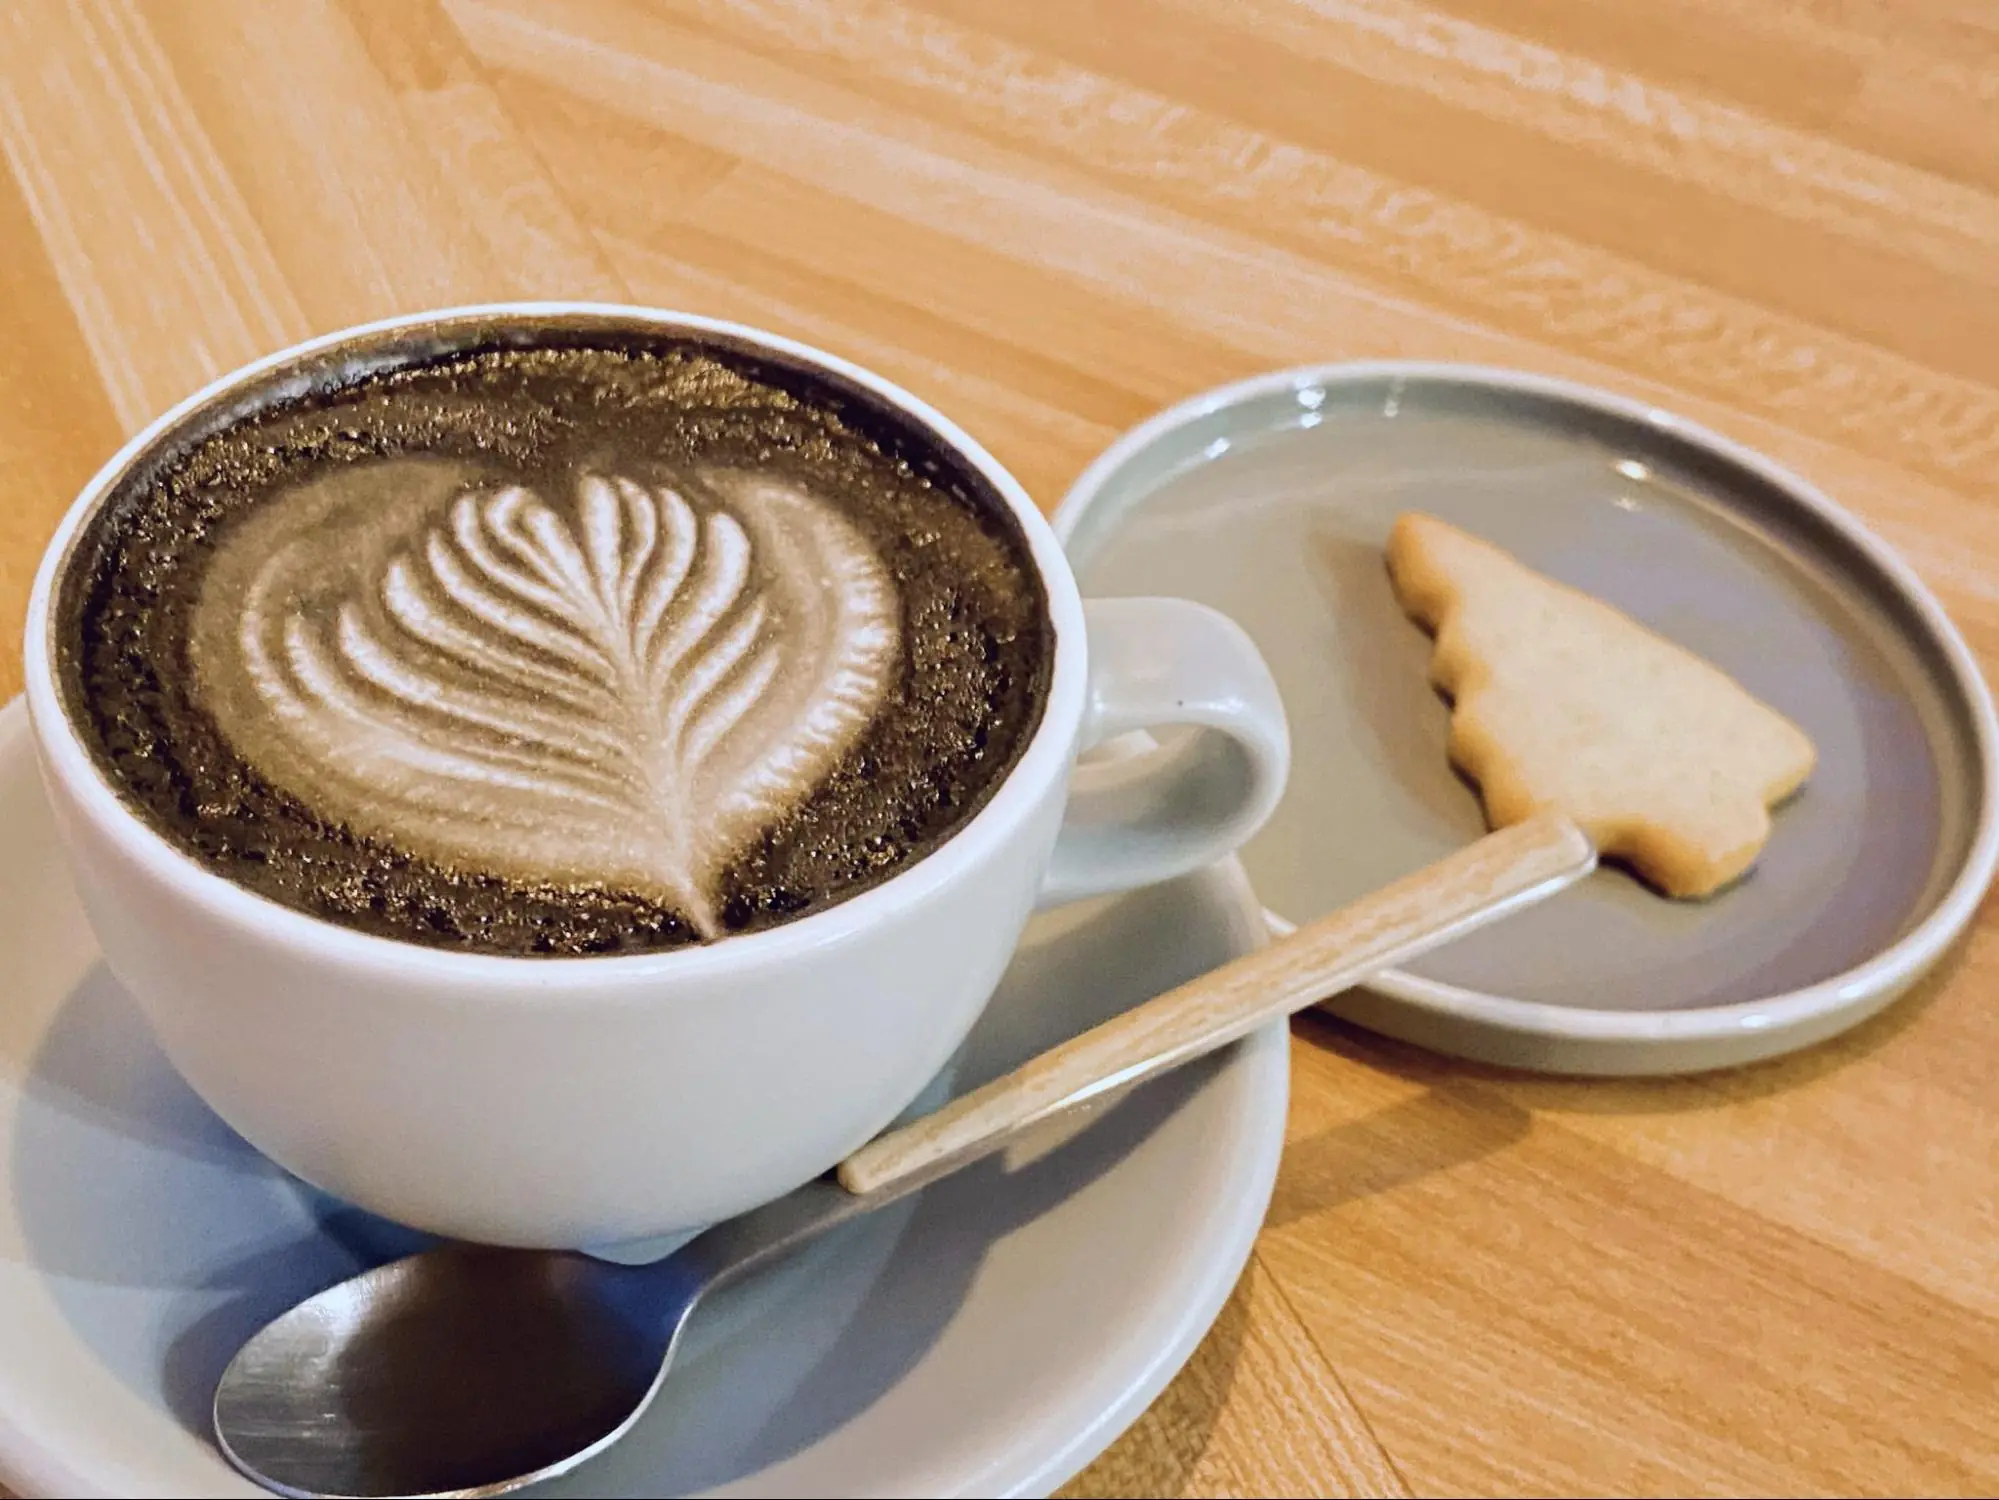 【津市】ささやかな幸福感と「おかえり」が聞こえそうな空間、「CAFE HIDAMARIYA」